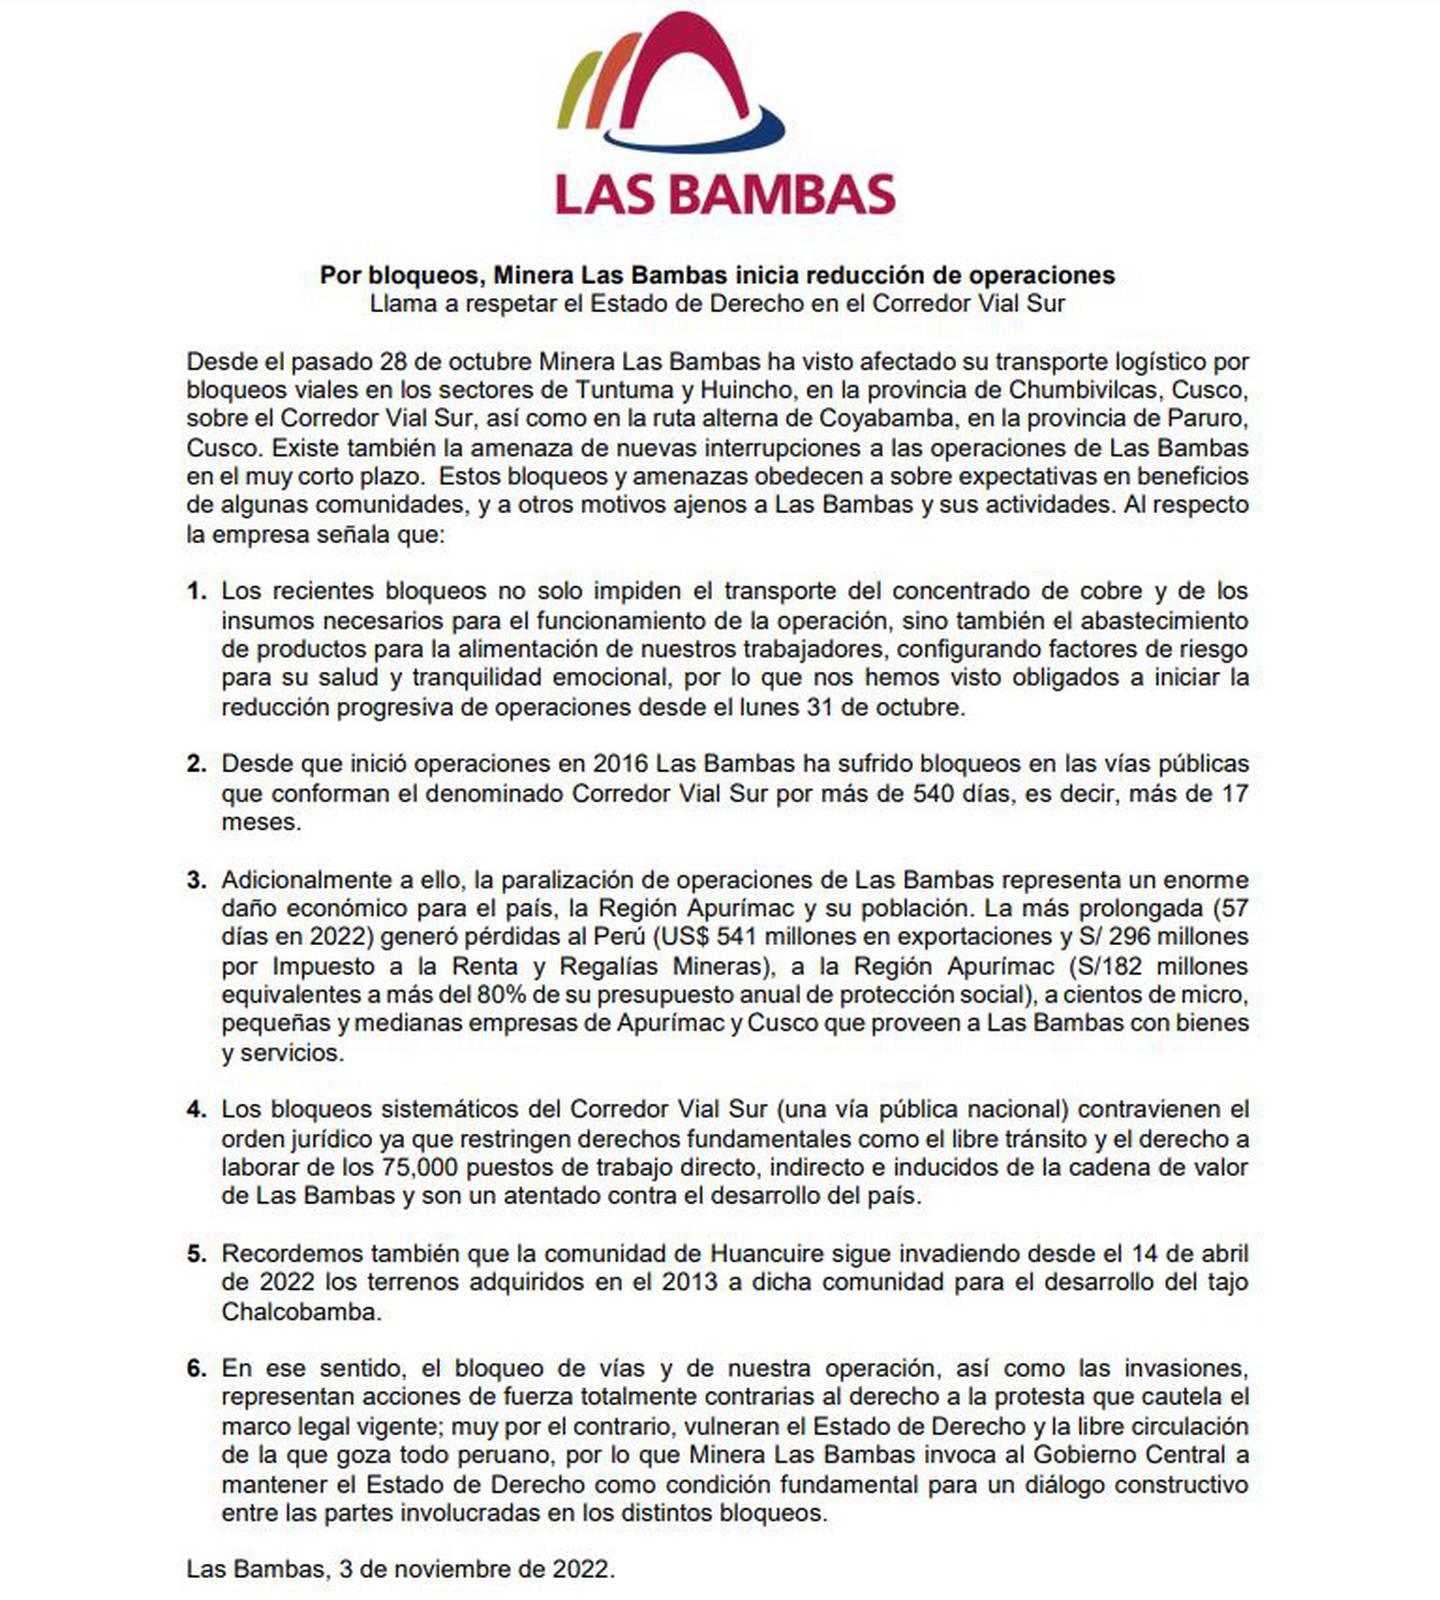 Comunicado de Las Bambas sobre la reducción progresiva de sus operaciones desde el lunes 31 de octubre.dfd